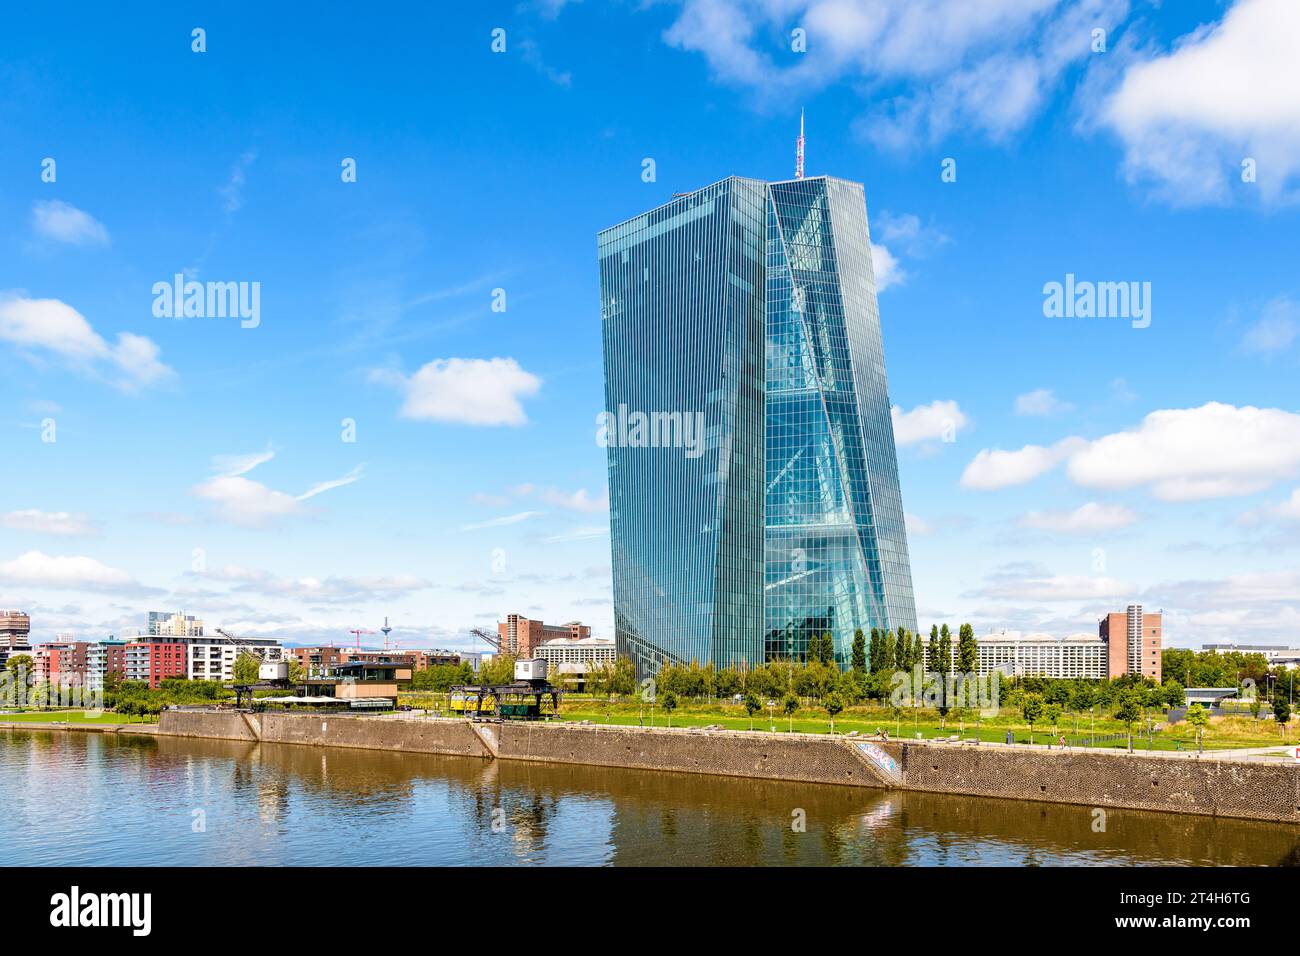 Vue générale du bâtiment Skytower à Francfort, Allemagne, siège de la Banque centrale européenne (BCE) depuis 2015, sur la rive droite du main. Banque D'Images